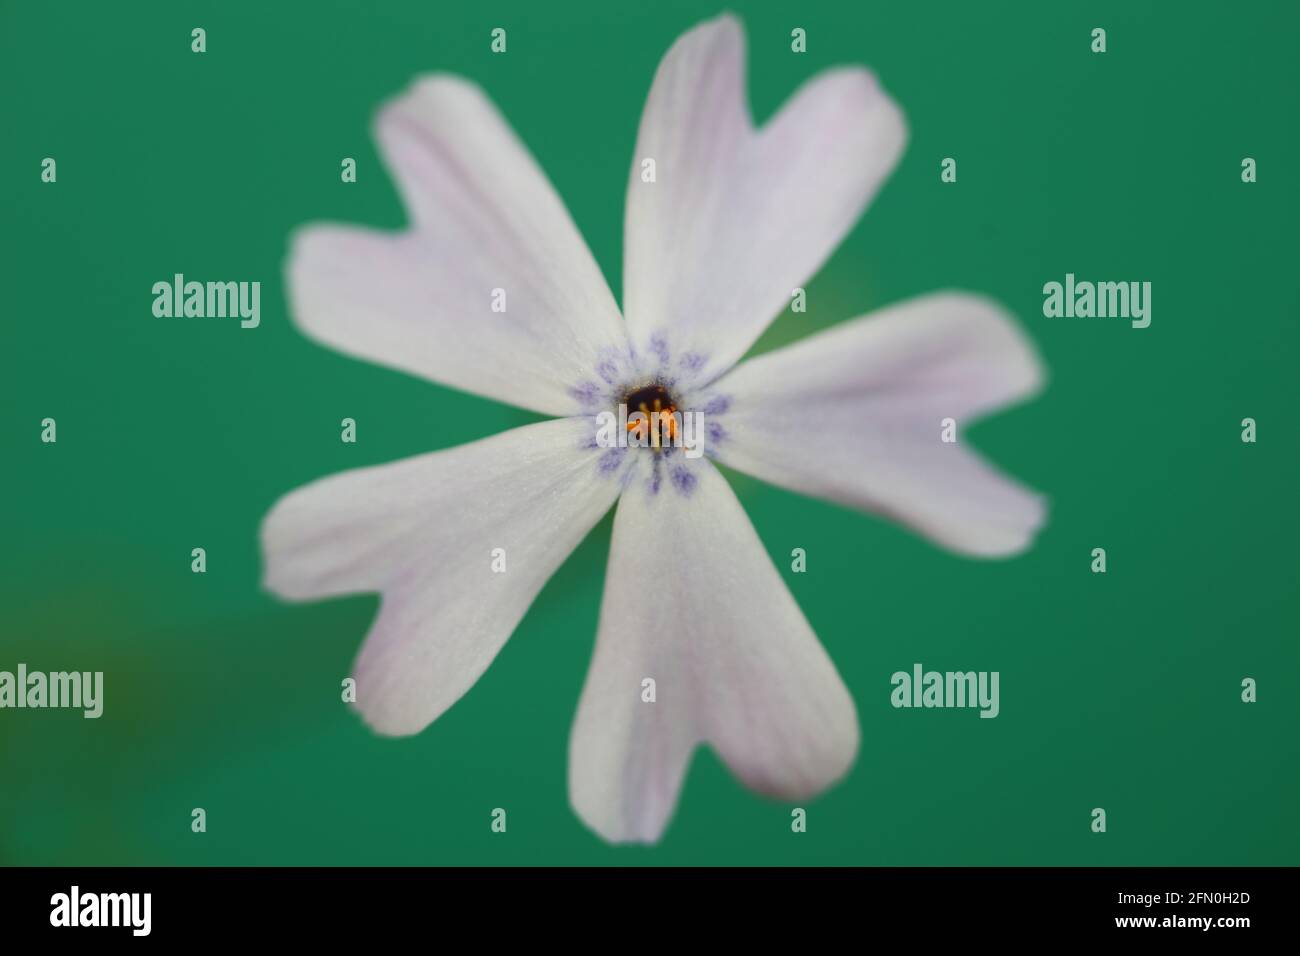 Weiße Blume blüht Nahaufnahme Phlox sabulata L. Familie polemoniaceae in grünem Hintergrund botanische moderne hohe Qualität groß pädagogische Drucke Stockfoto